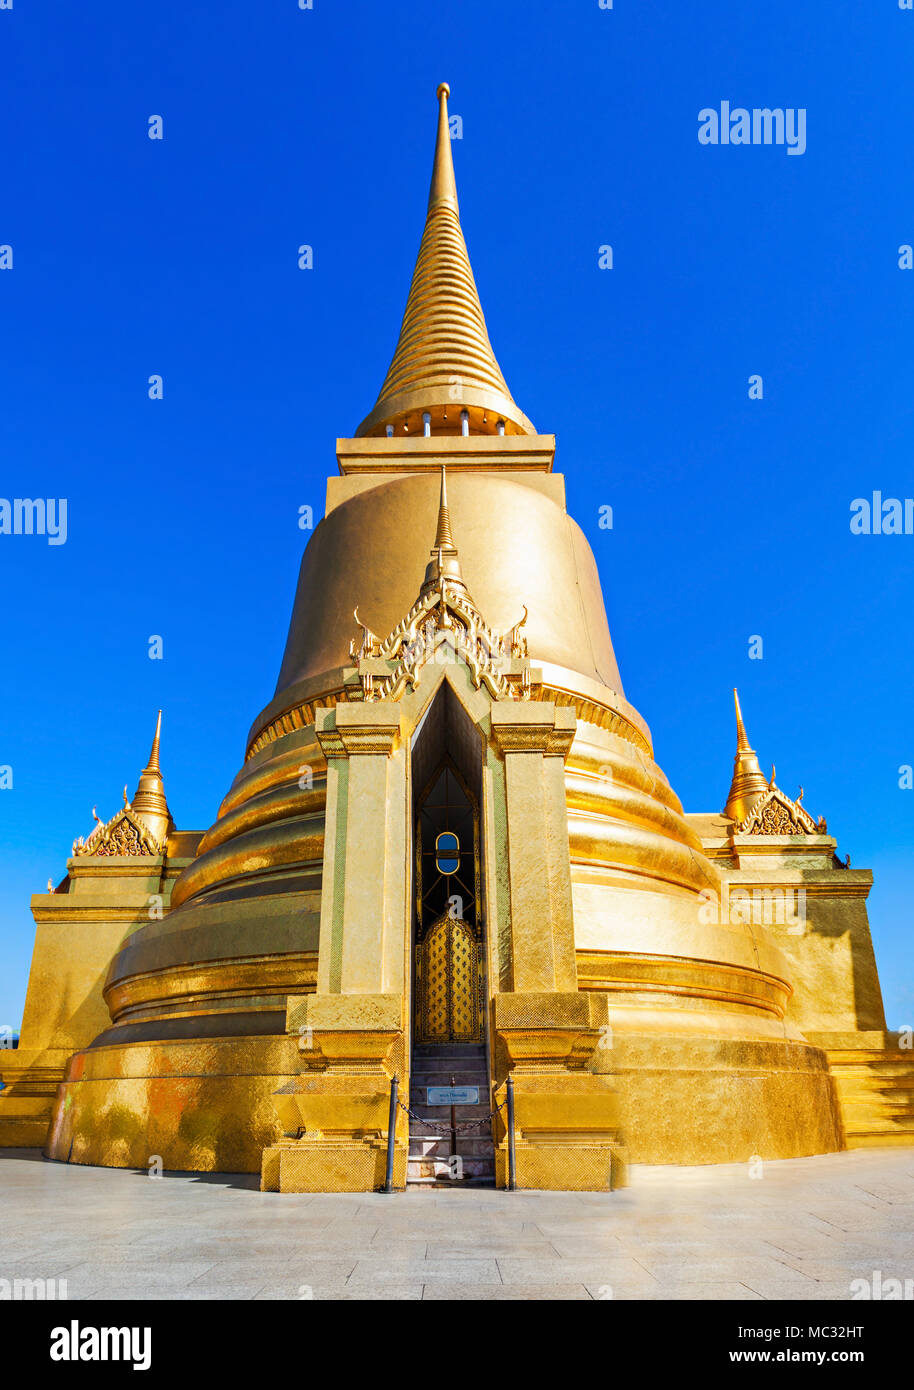 Phra Sri Rattana Chedi in Sri Lanka stile presso il Wat Phra Kaew Tempio a Bangkok, in Thailandia Foto Stock